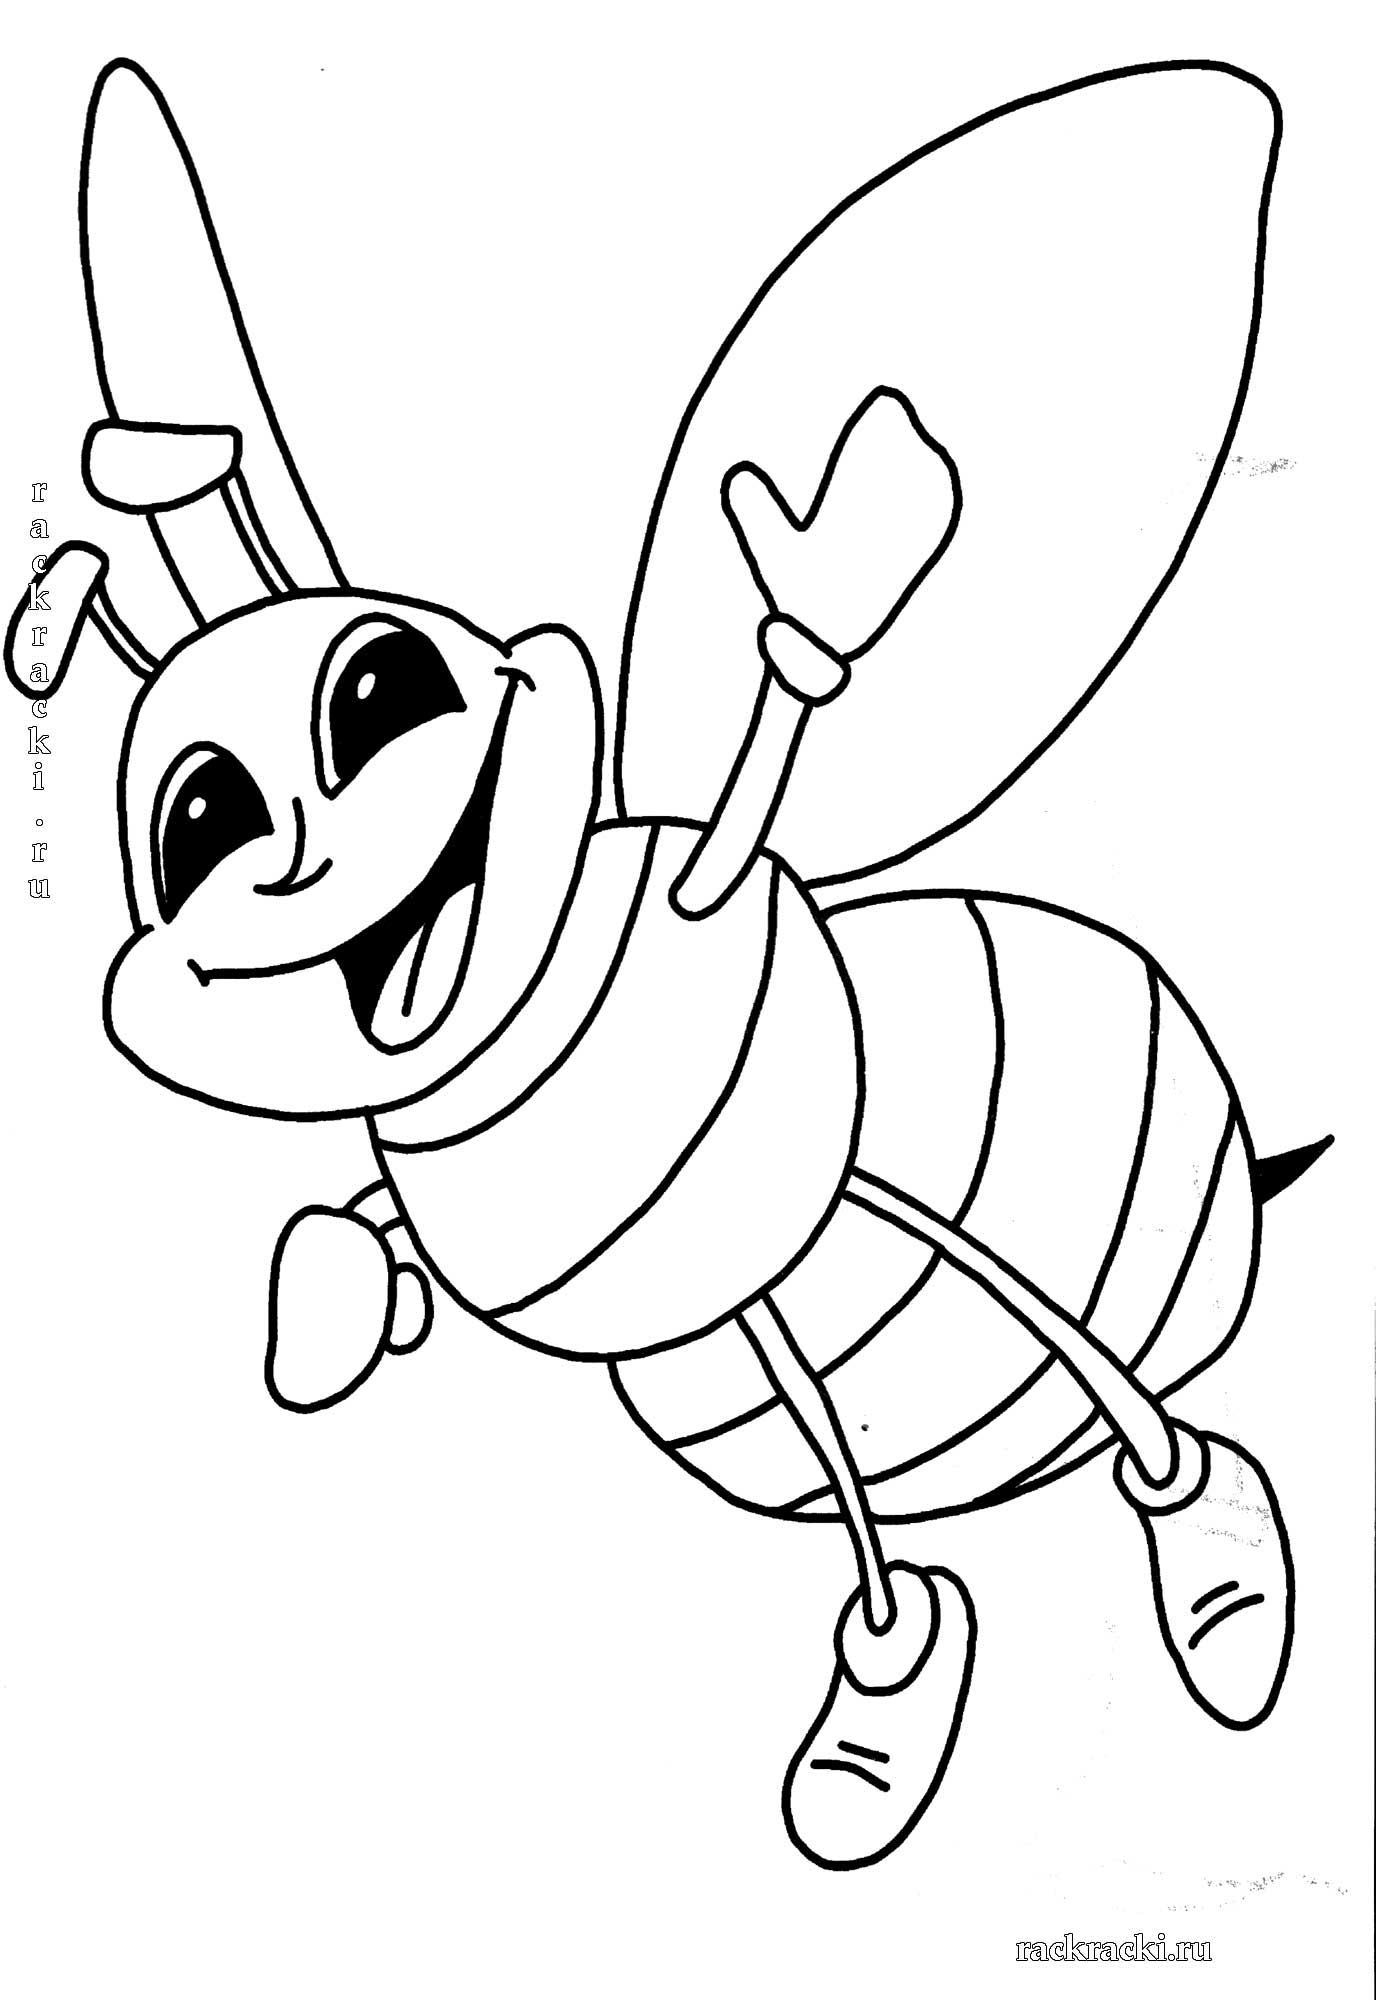 Пчелка раскраска распечатать. Пчела раскраска. Пчела раскраска для детей. Оса раскраска для детей. Раскраска пчёлка для детей.